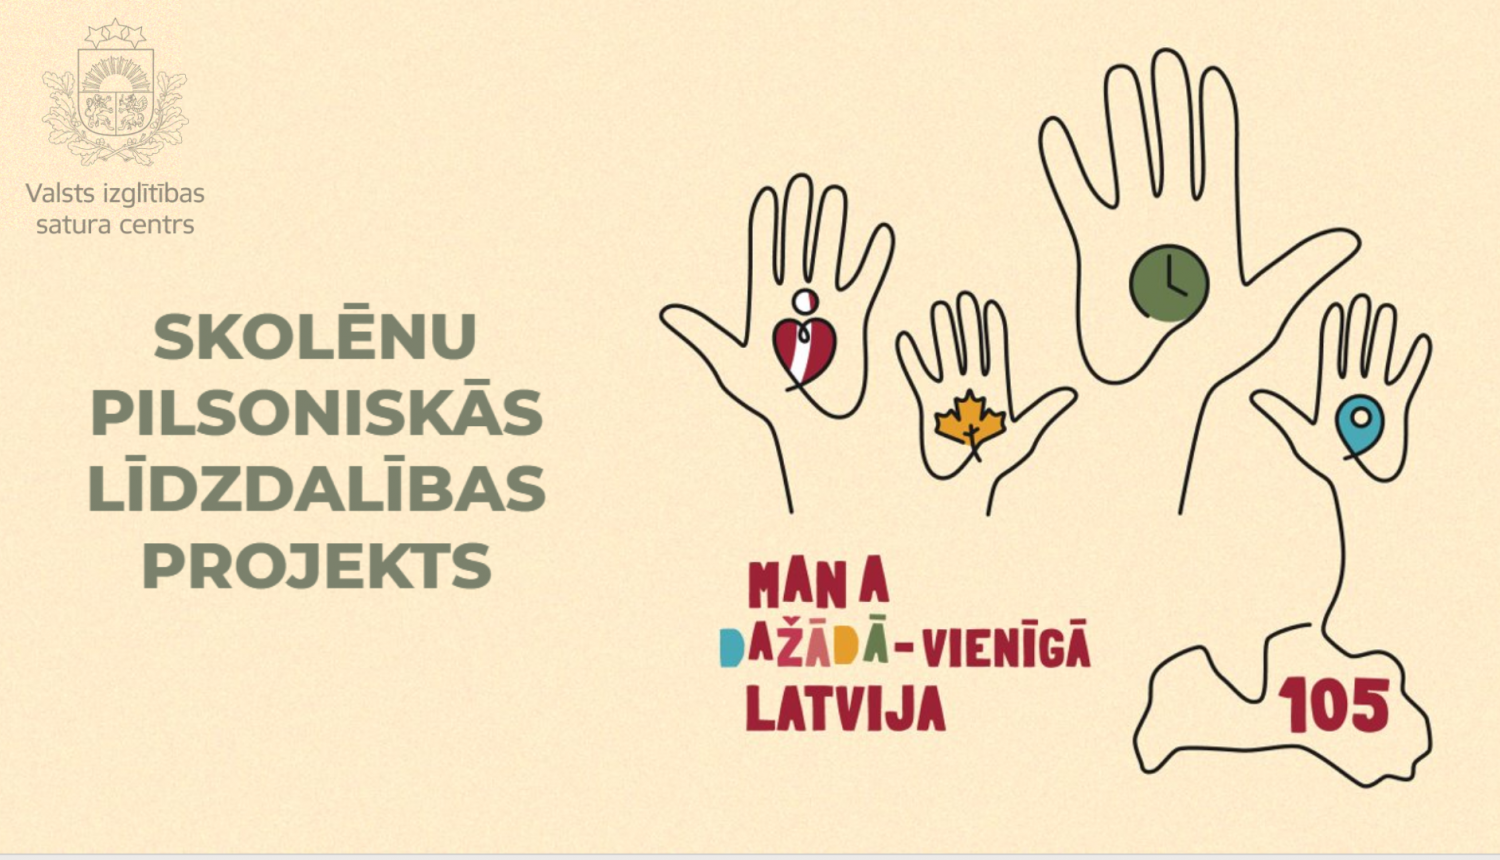 Mana dažādā - vienīgā Latvija